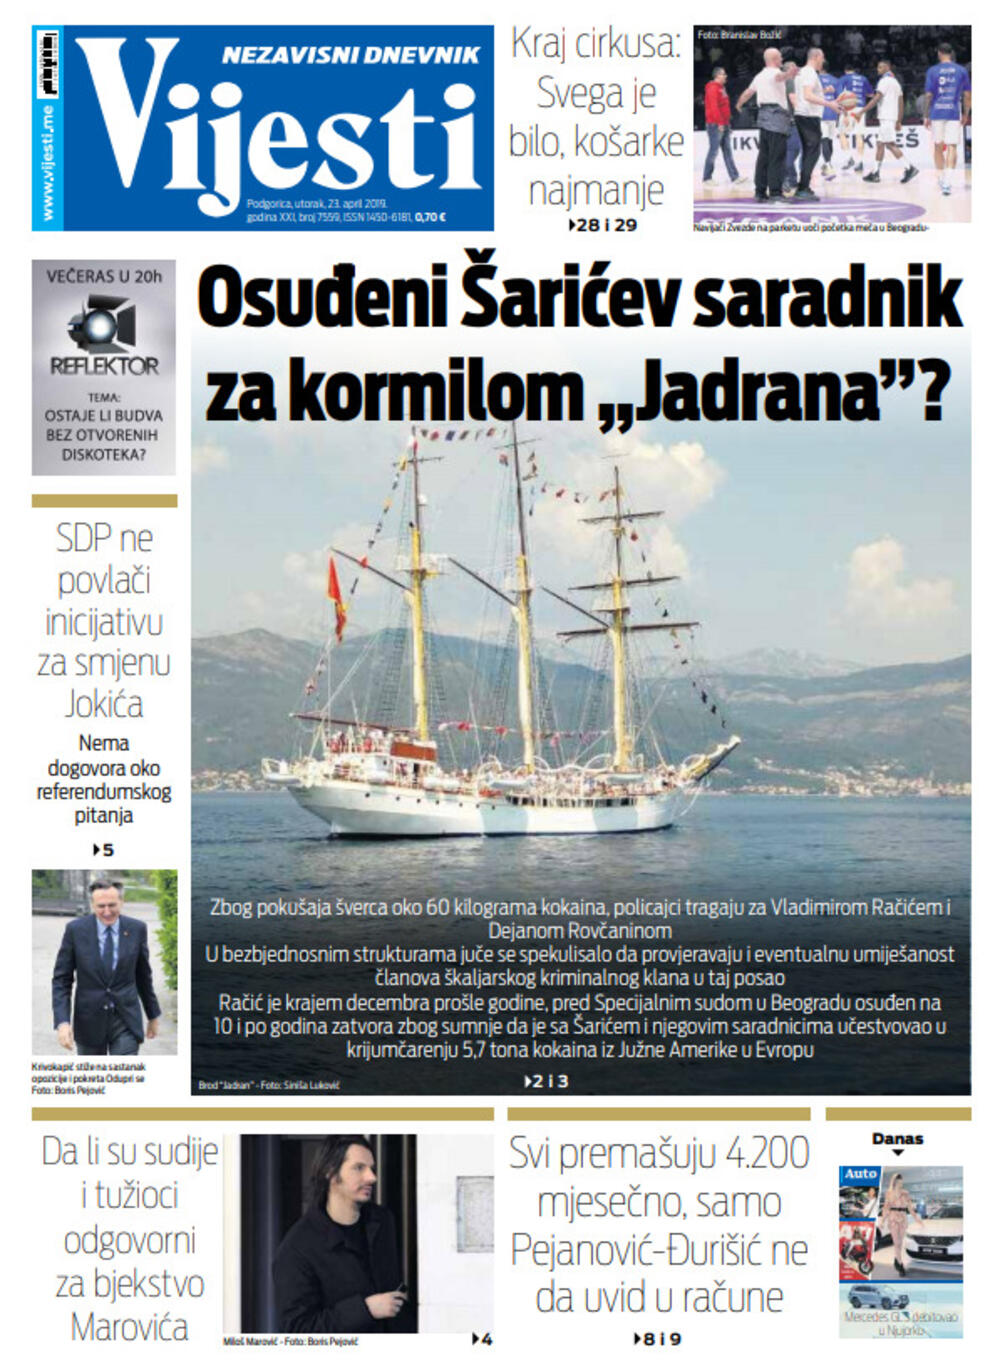 Naslovna strana "Vijesti" za 23.2., Foto: Vijesti